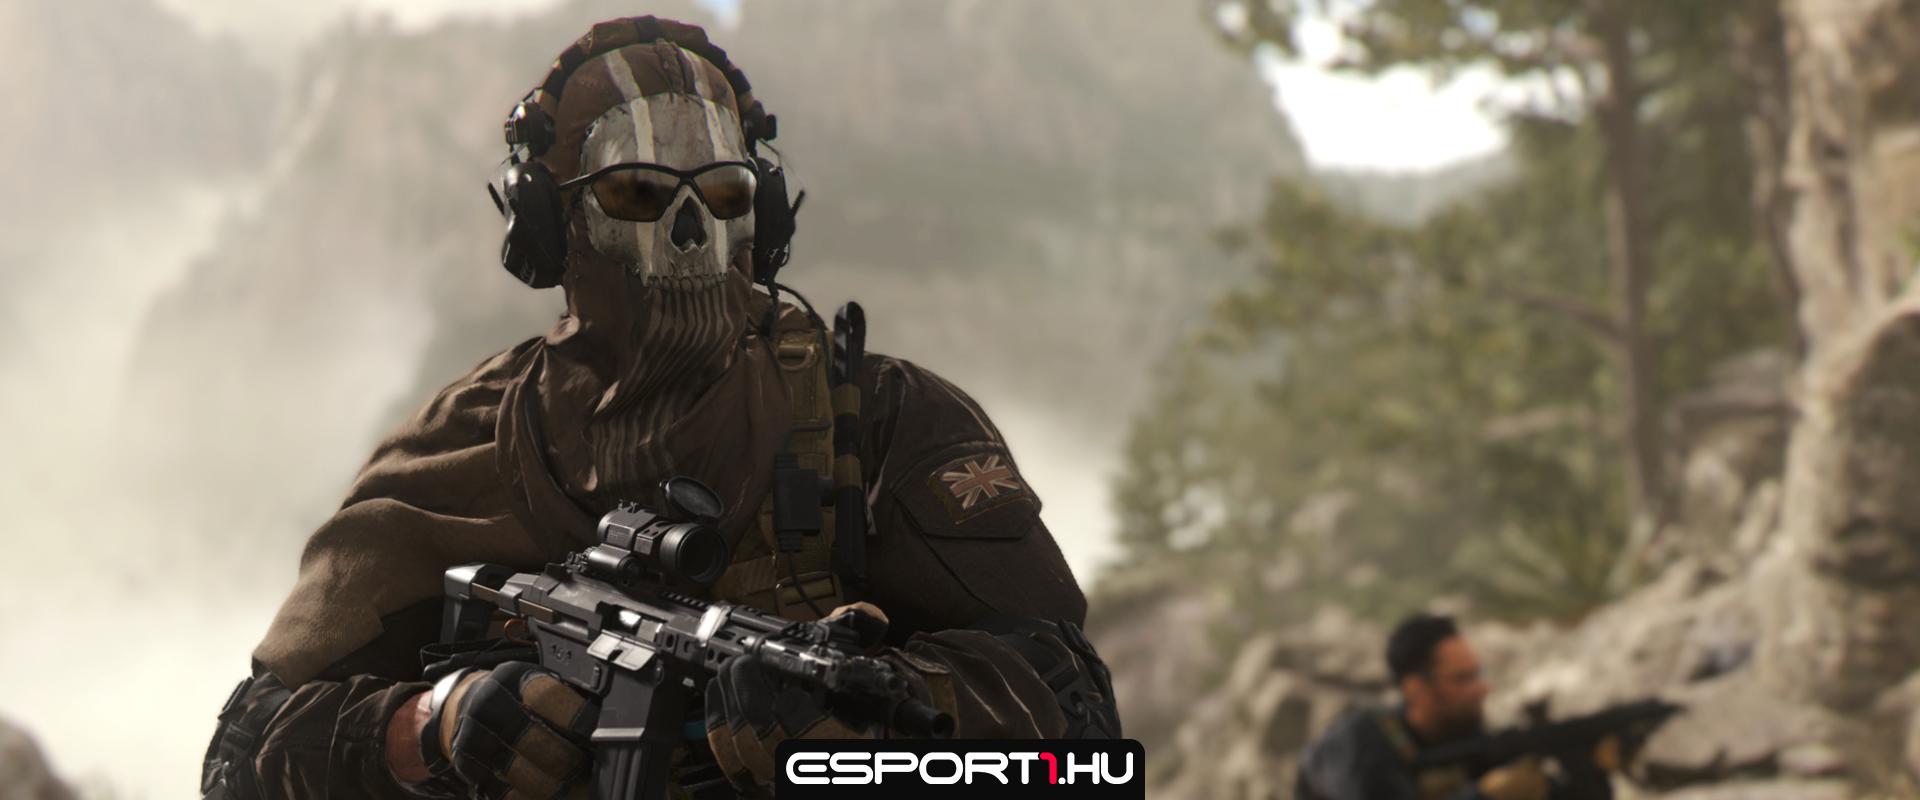 Hivatalosan is bemutatkozott a Call of Duty: Modern Warfare 2